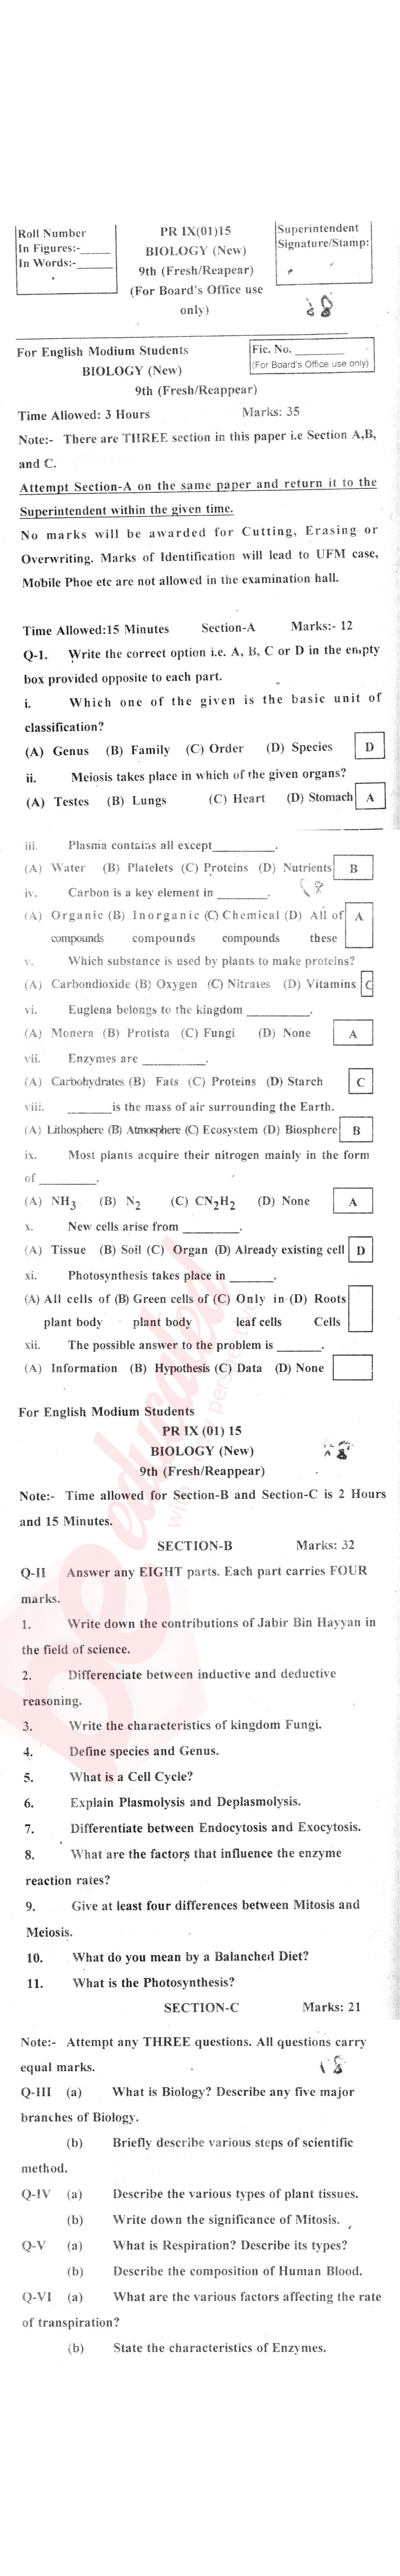 Biology 9th English Medium Past Paper Group 1 BISE Swat 2015